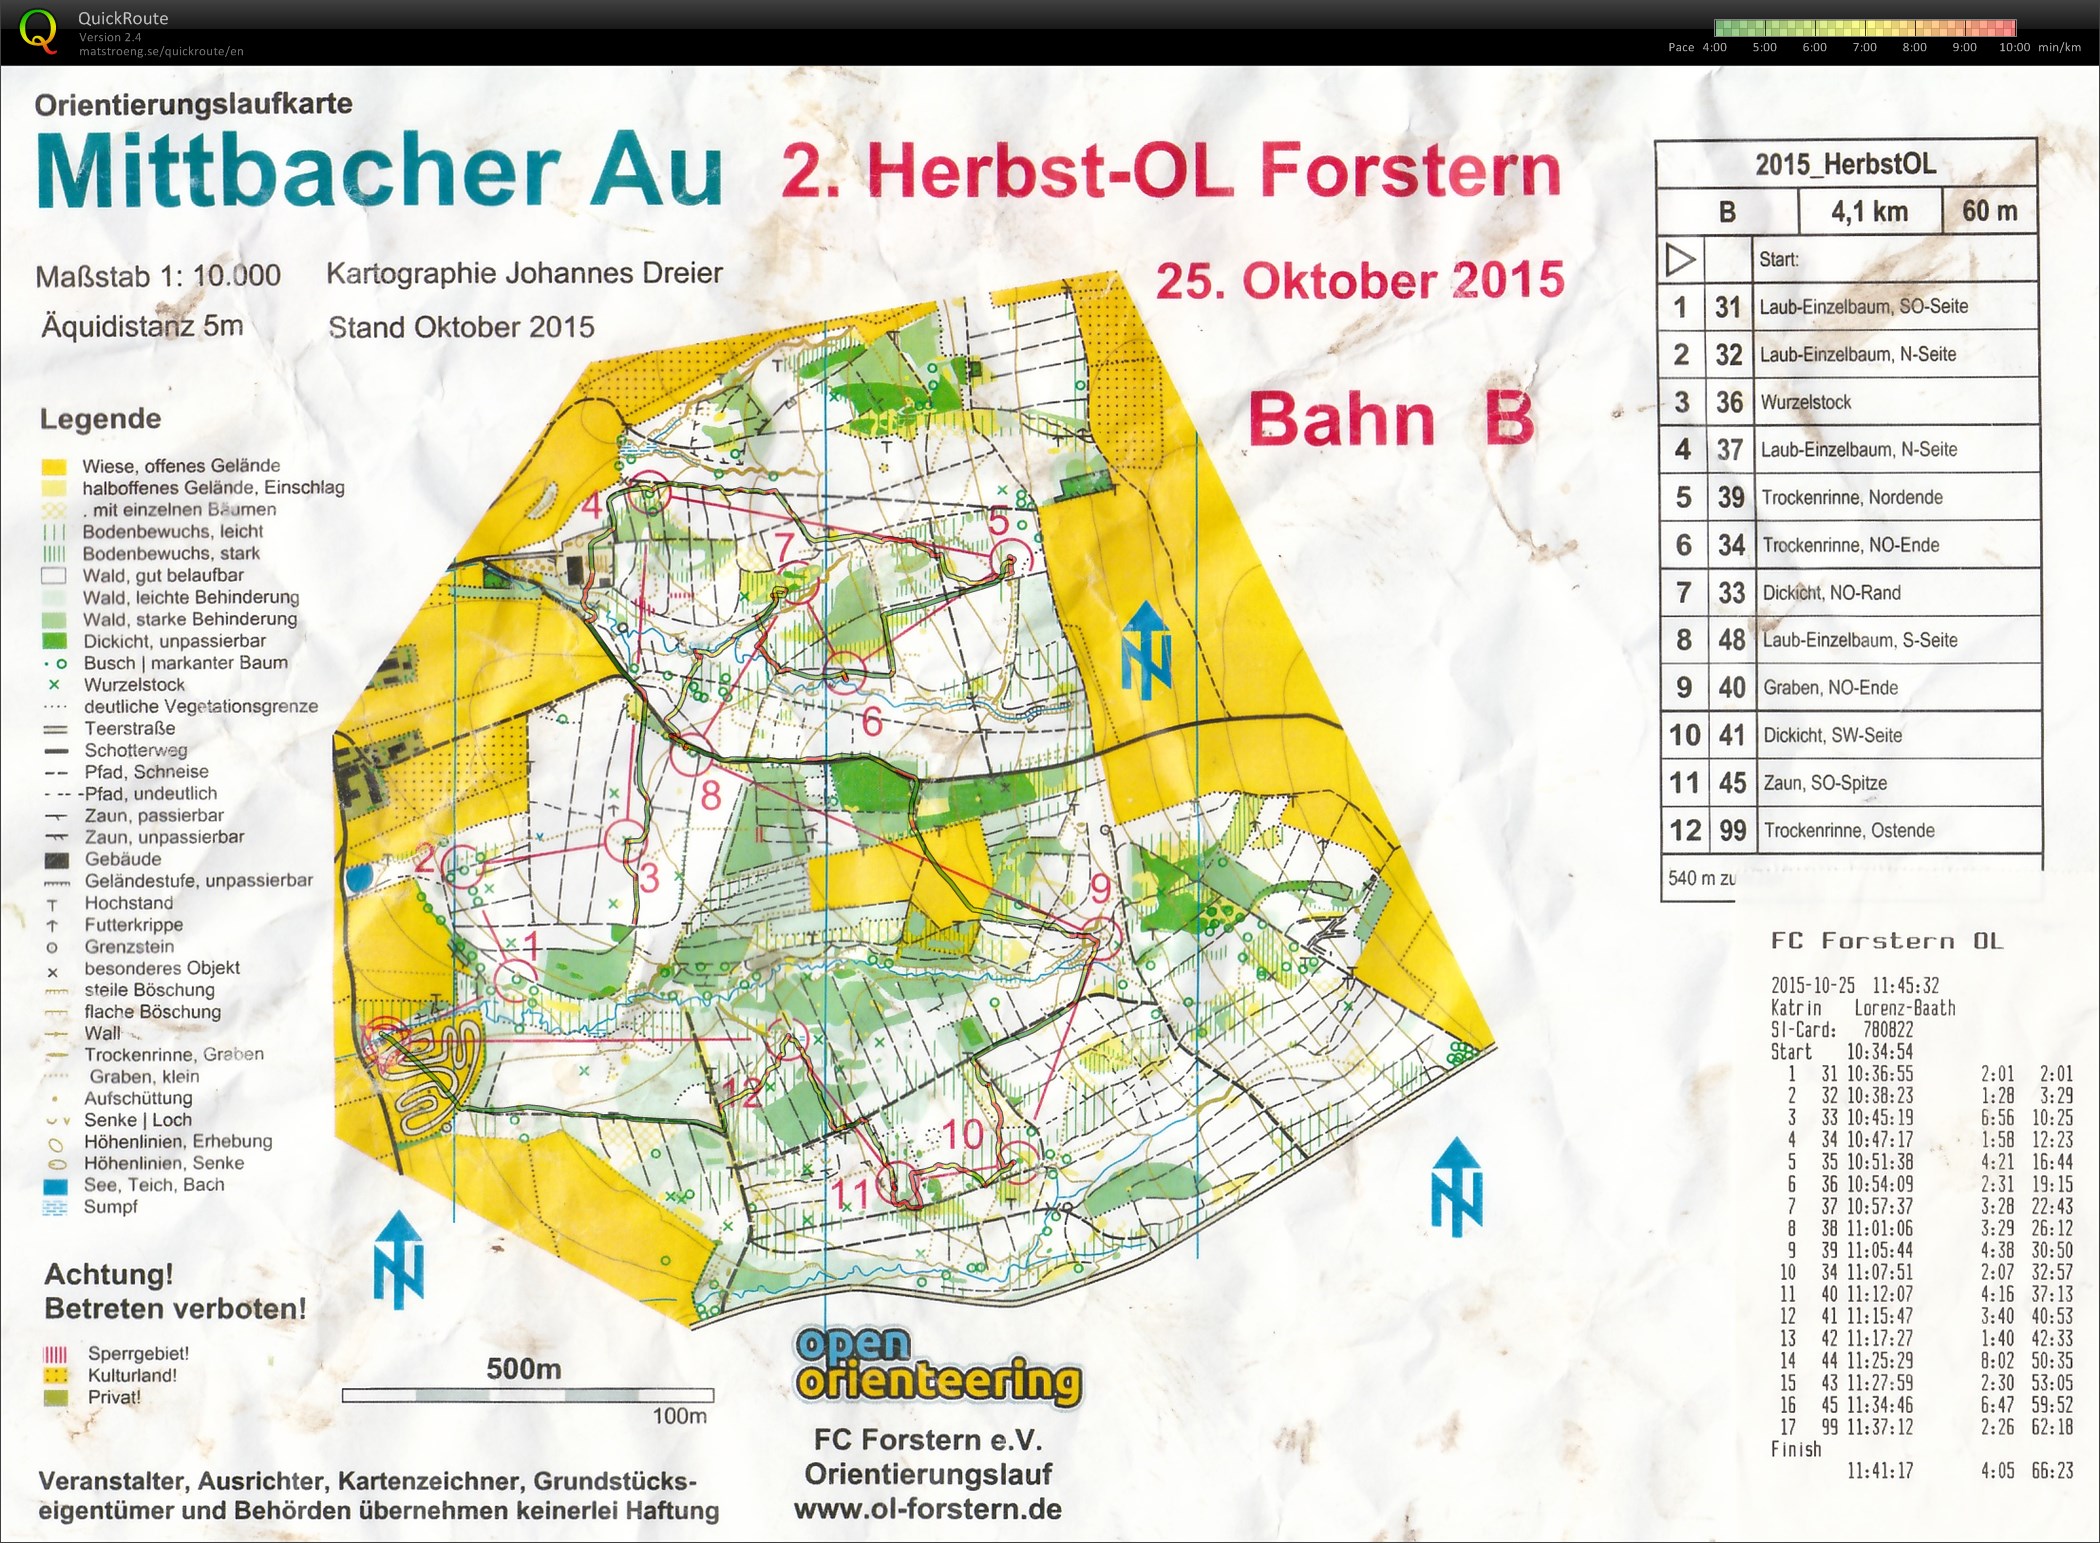 Herbst-OL Forstern (25.10.2015)